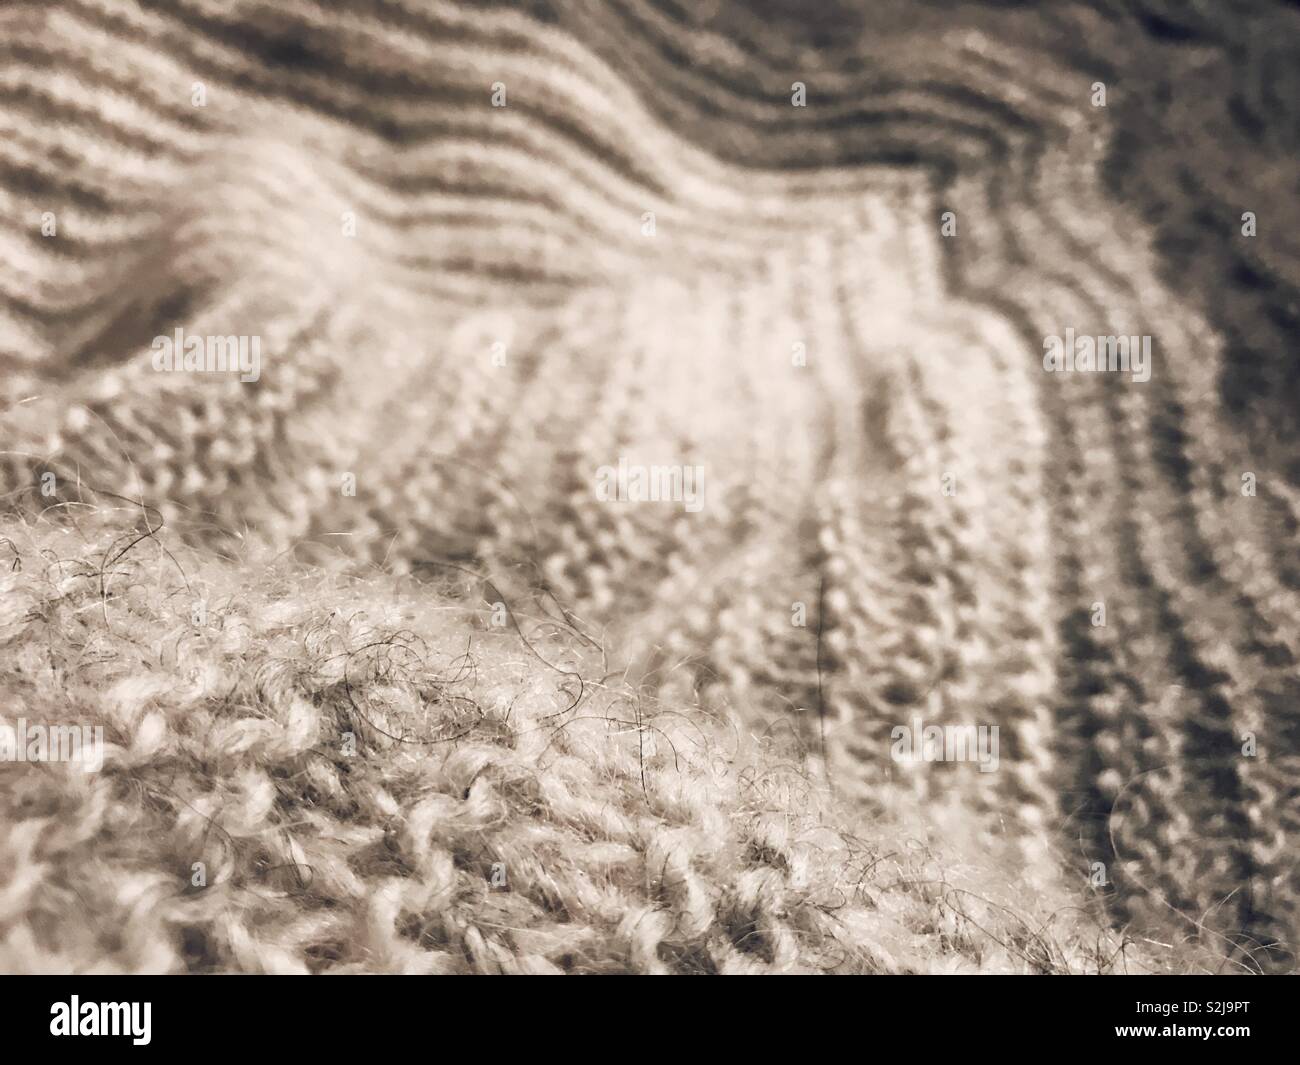 Sovradimensionato scialle grigio a maglia con fuzzy filato islandese Foto Stock